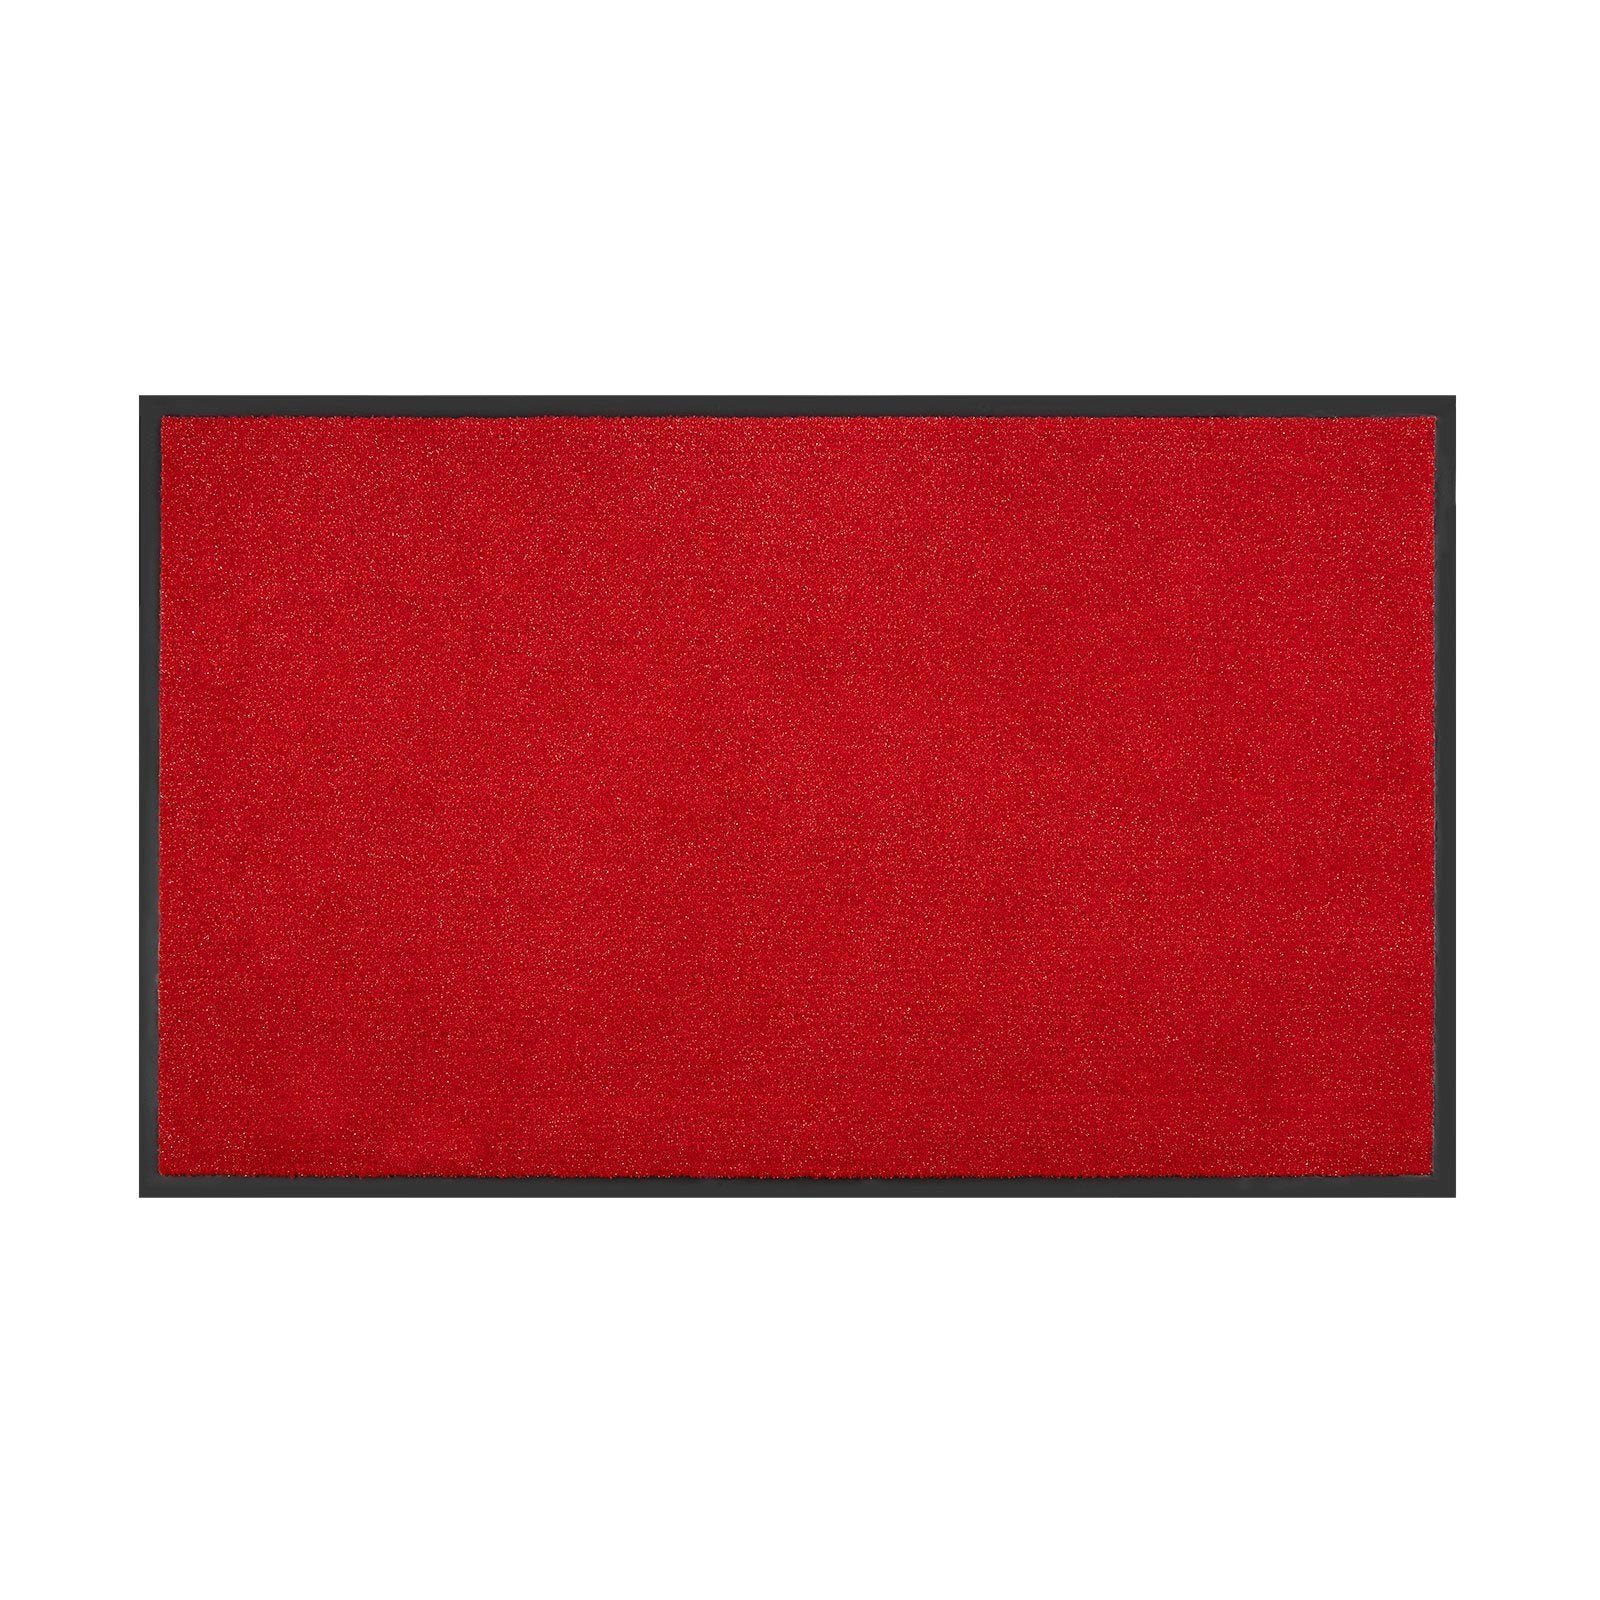 Fußmatte Schmutzfangmatte Flash, Eingangsmatte in vielen Farben & Größen, Sauberlaufmatte, Floordirekt, Rechteckig, Höhe: 5.5 mm Rot